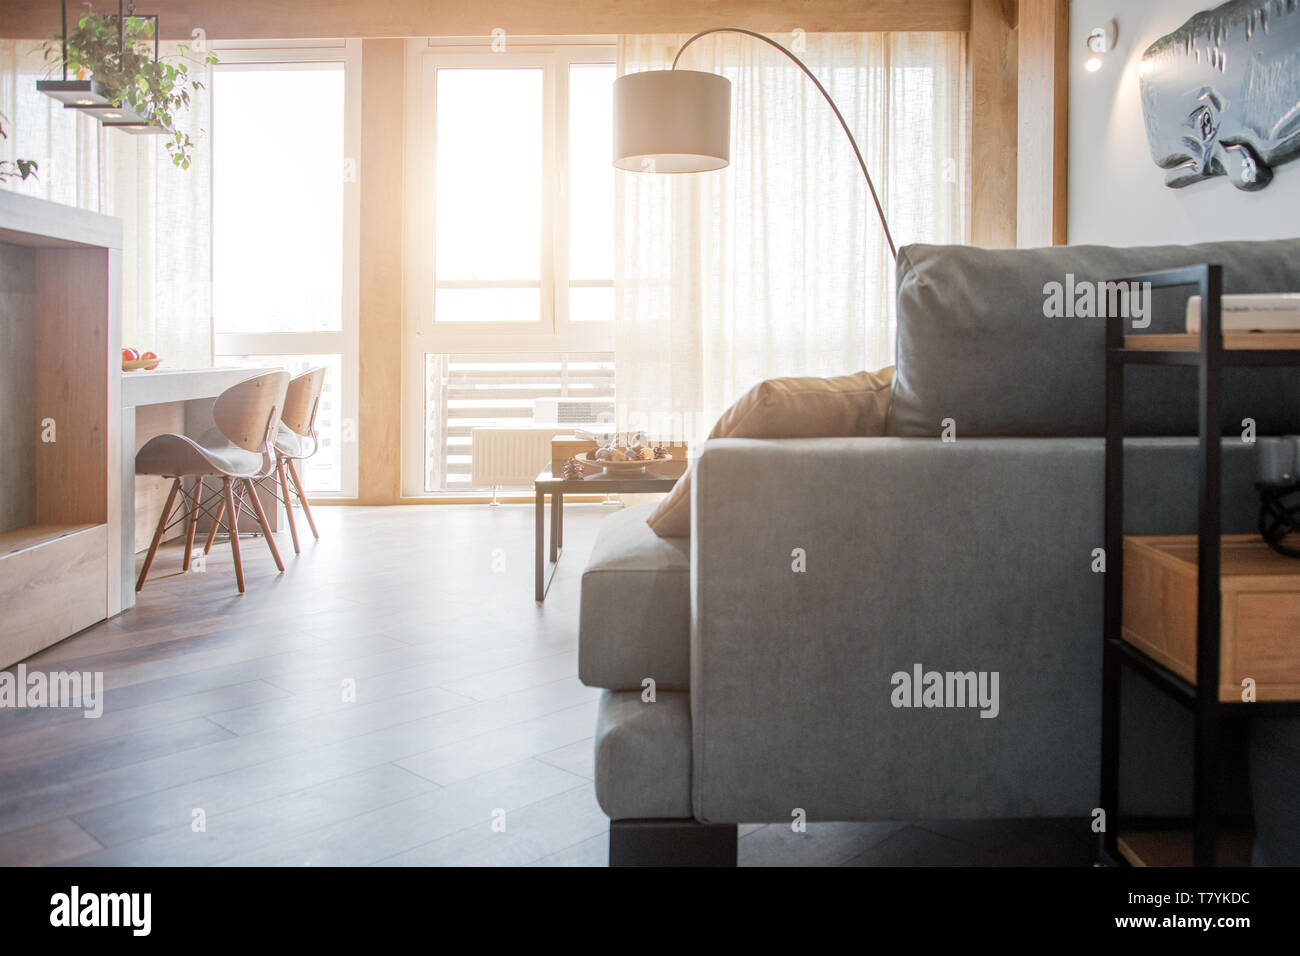 Minimalistischen Modernen Wohnzimmer Mit Sofa Im Loft Stil